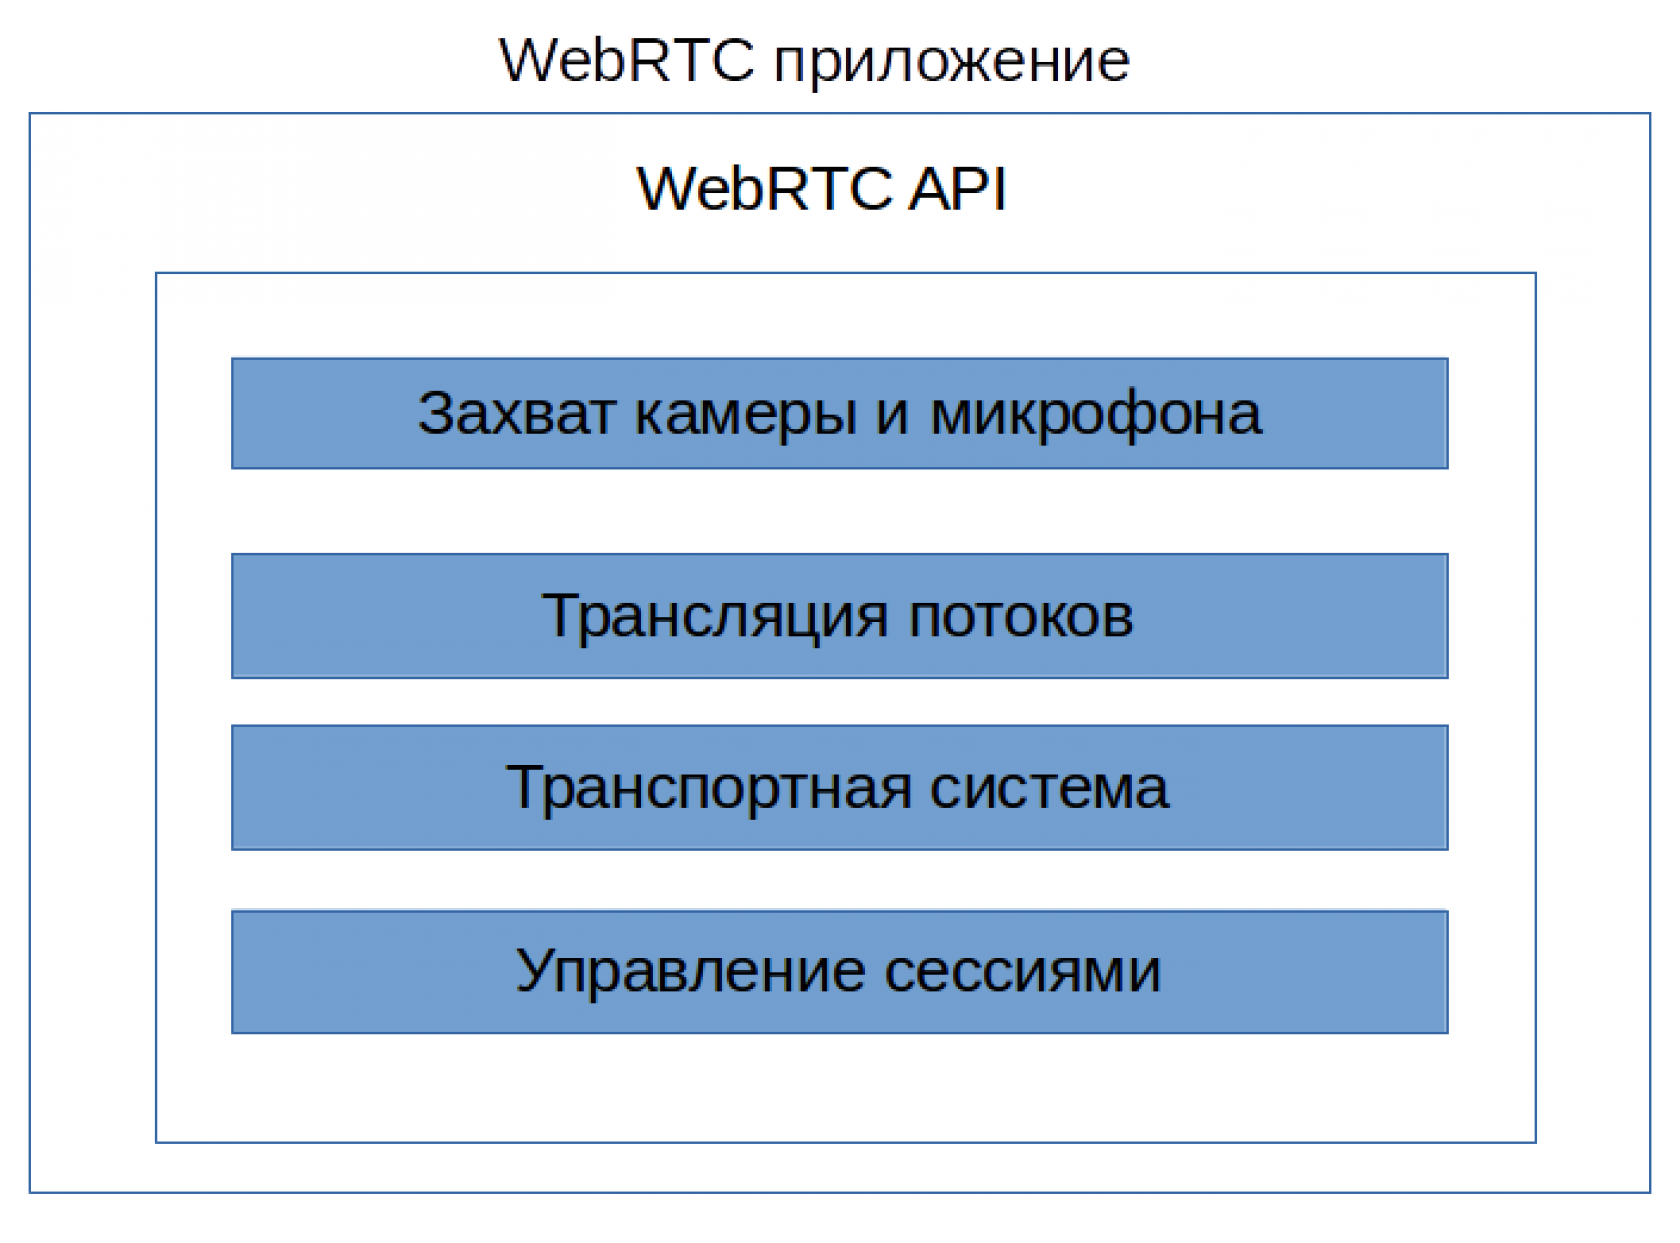 приложение webrtc можно представить следующей схемой с 4-мя уровнями